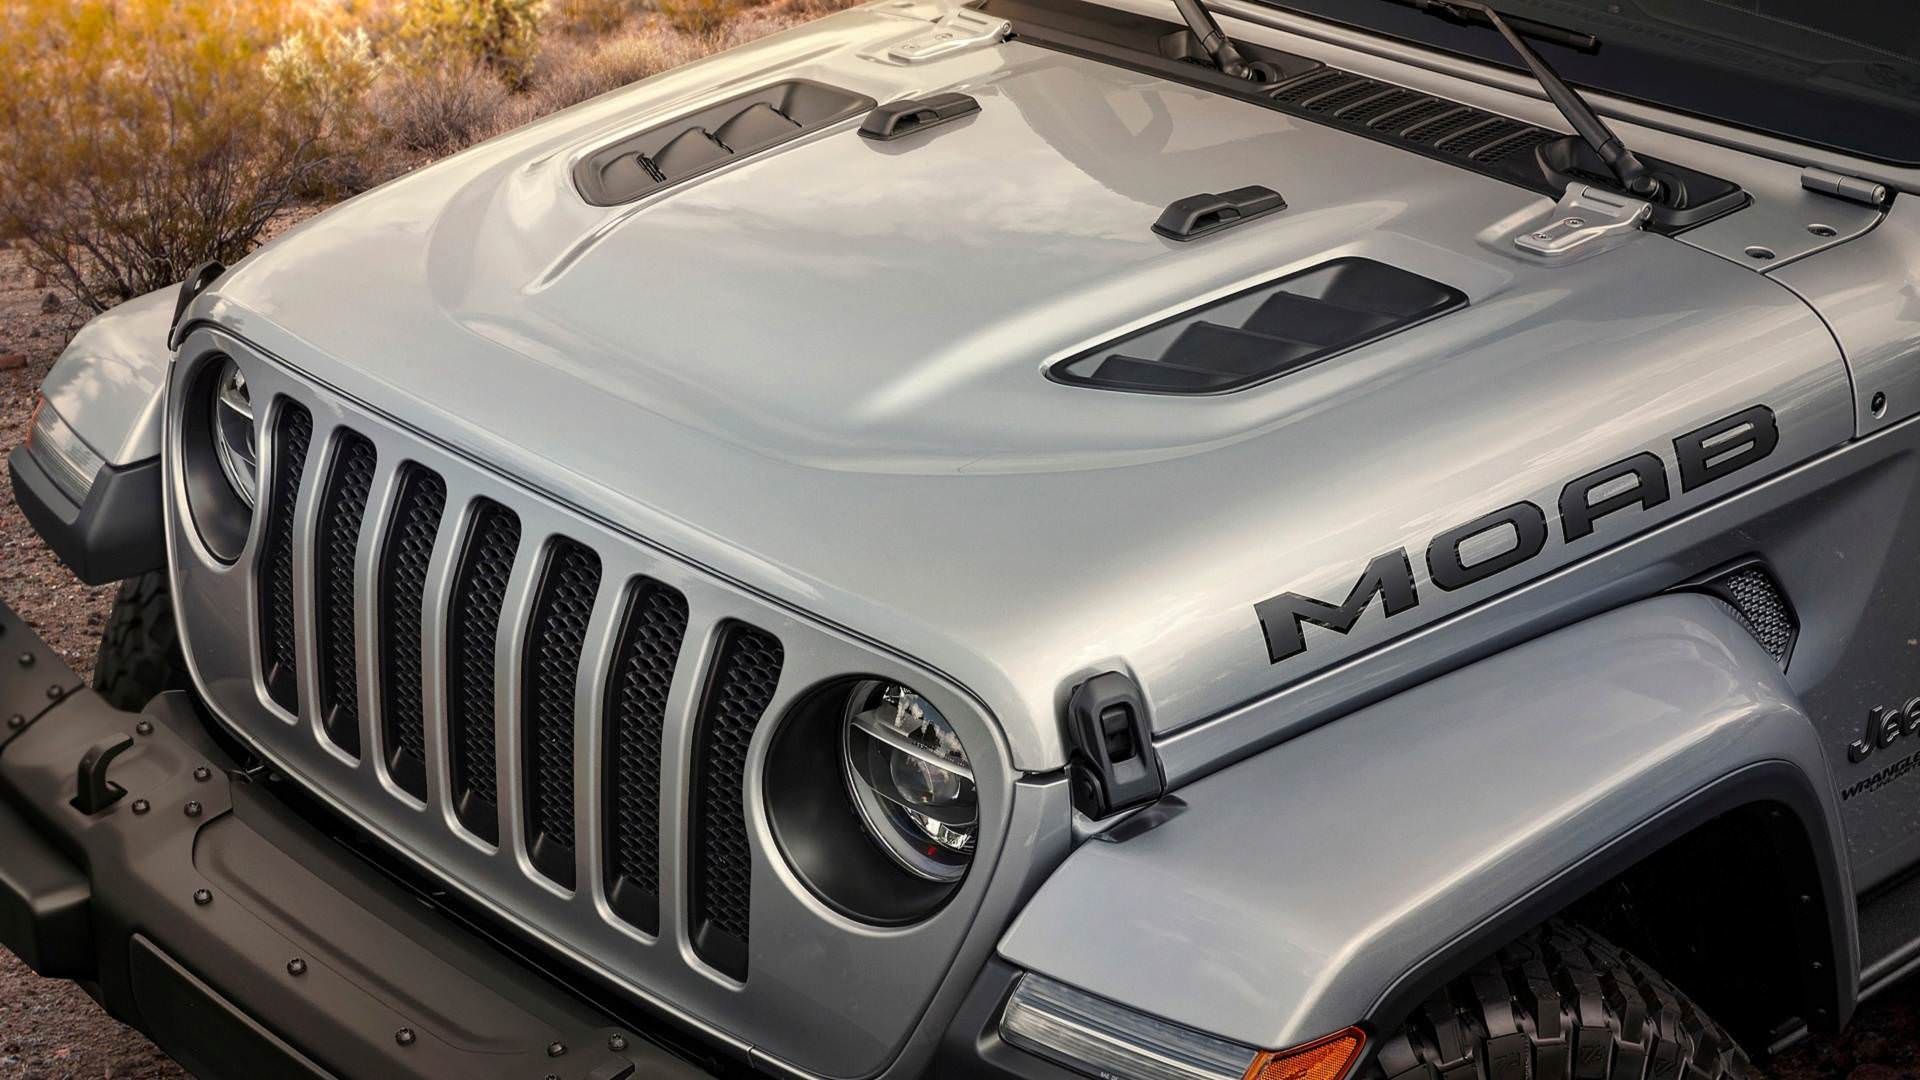 مرجع متخصصين ايران Jeep Wrangler Moab Edition / خودروي آف‌رود جيپ رانگلر نسخه موآب